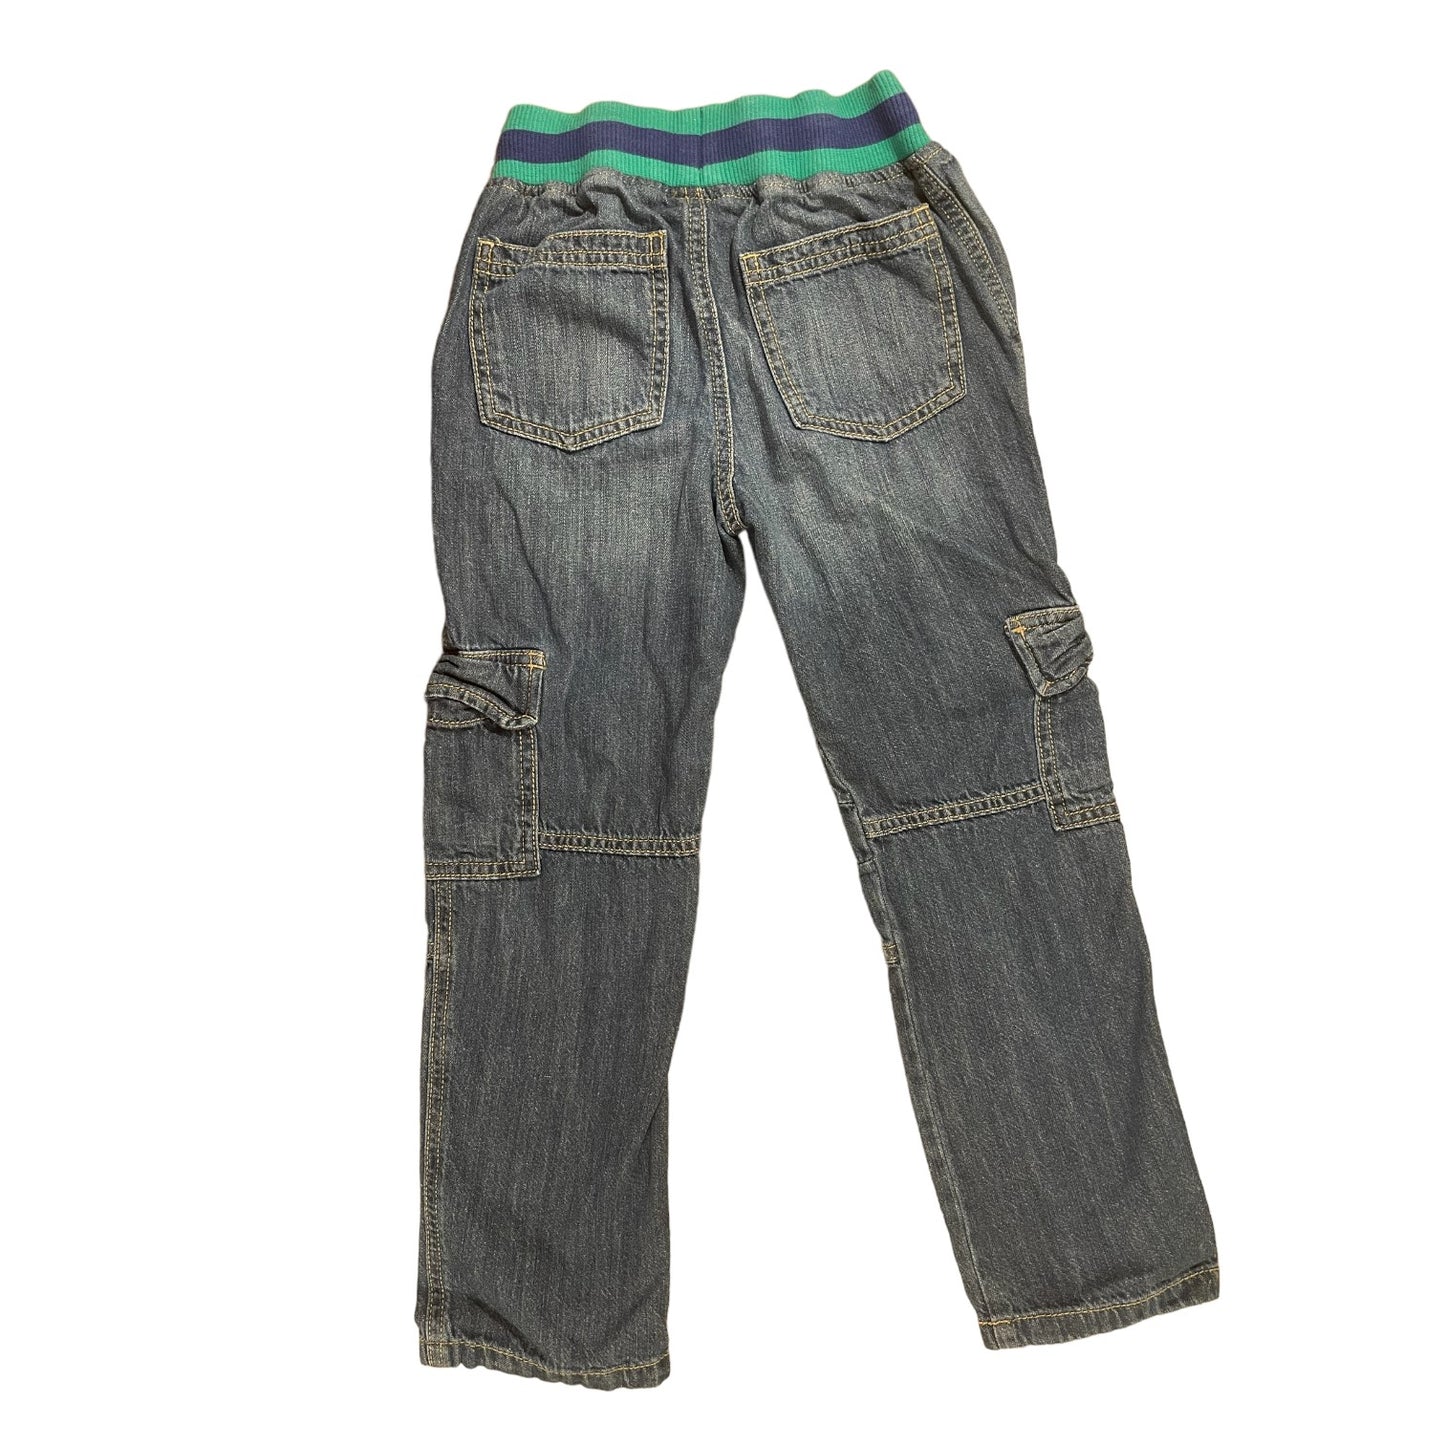 Gymboree Soft Waist Boys Jeans Size 6